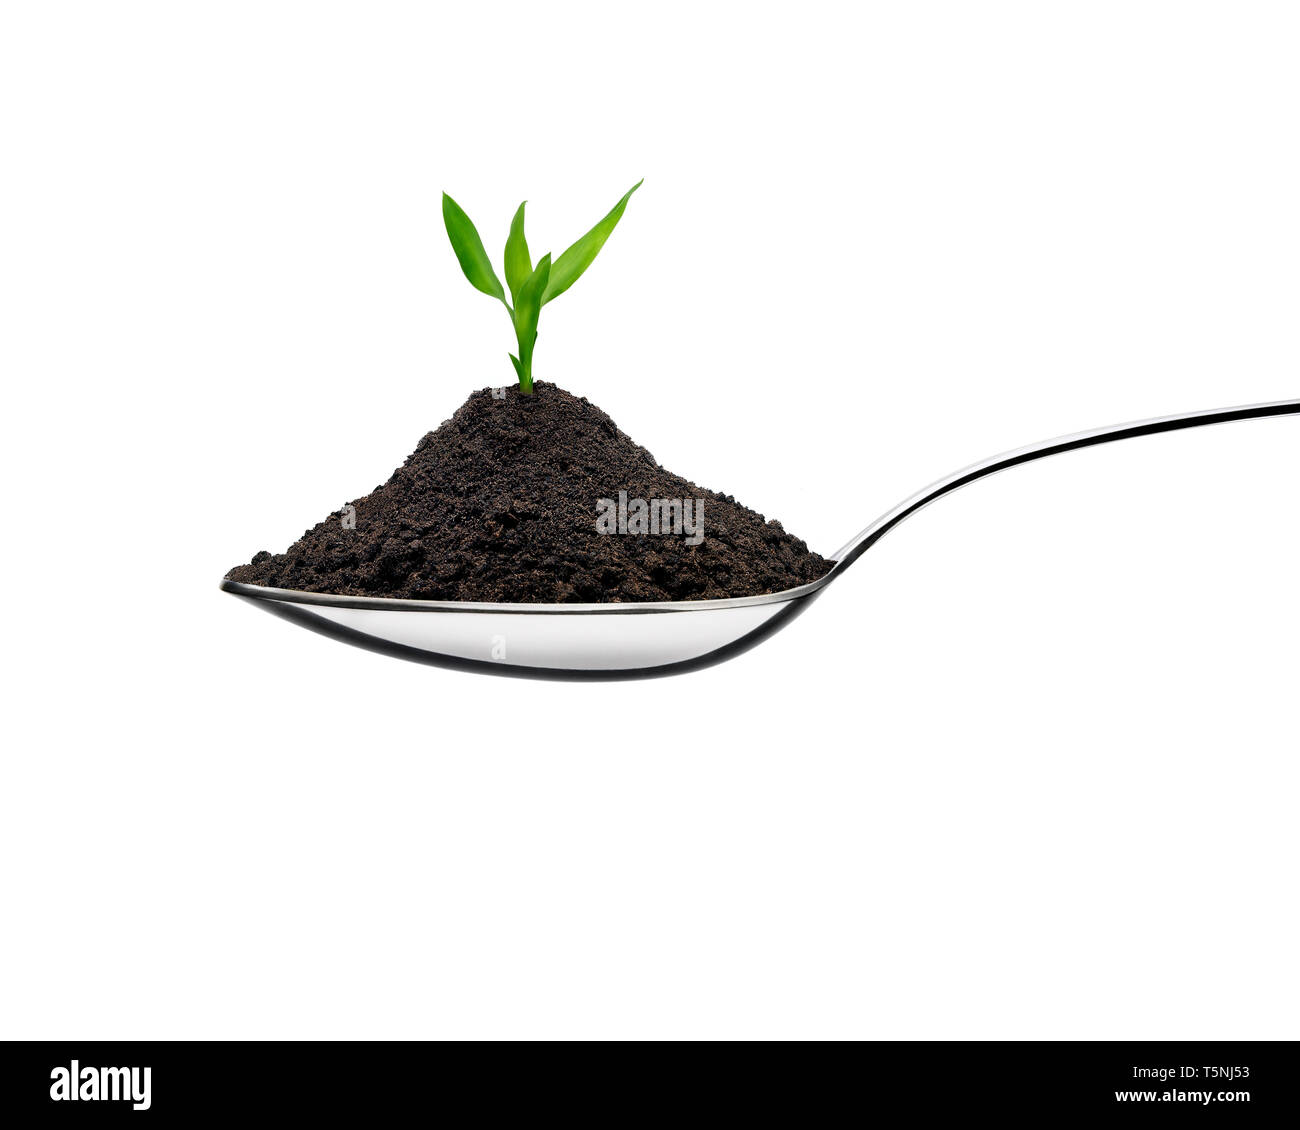 Montón de tierra en una cuchara y la planta que crece en un concepto ecológico. Vista frontal contra un fondo blanco. Foto de stock